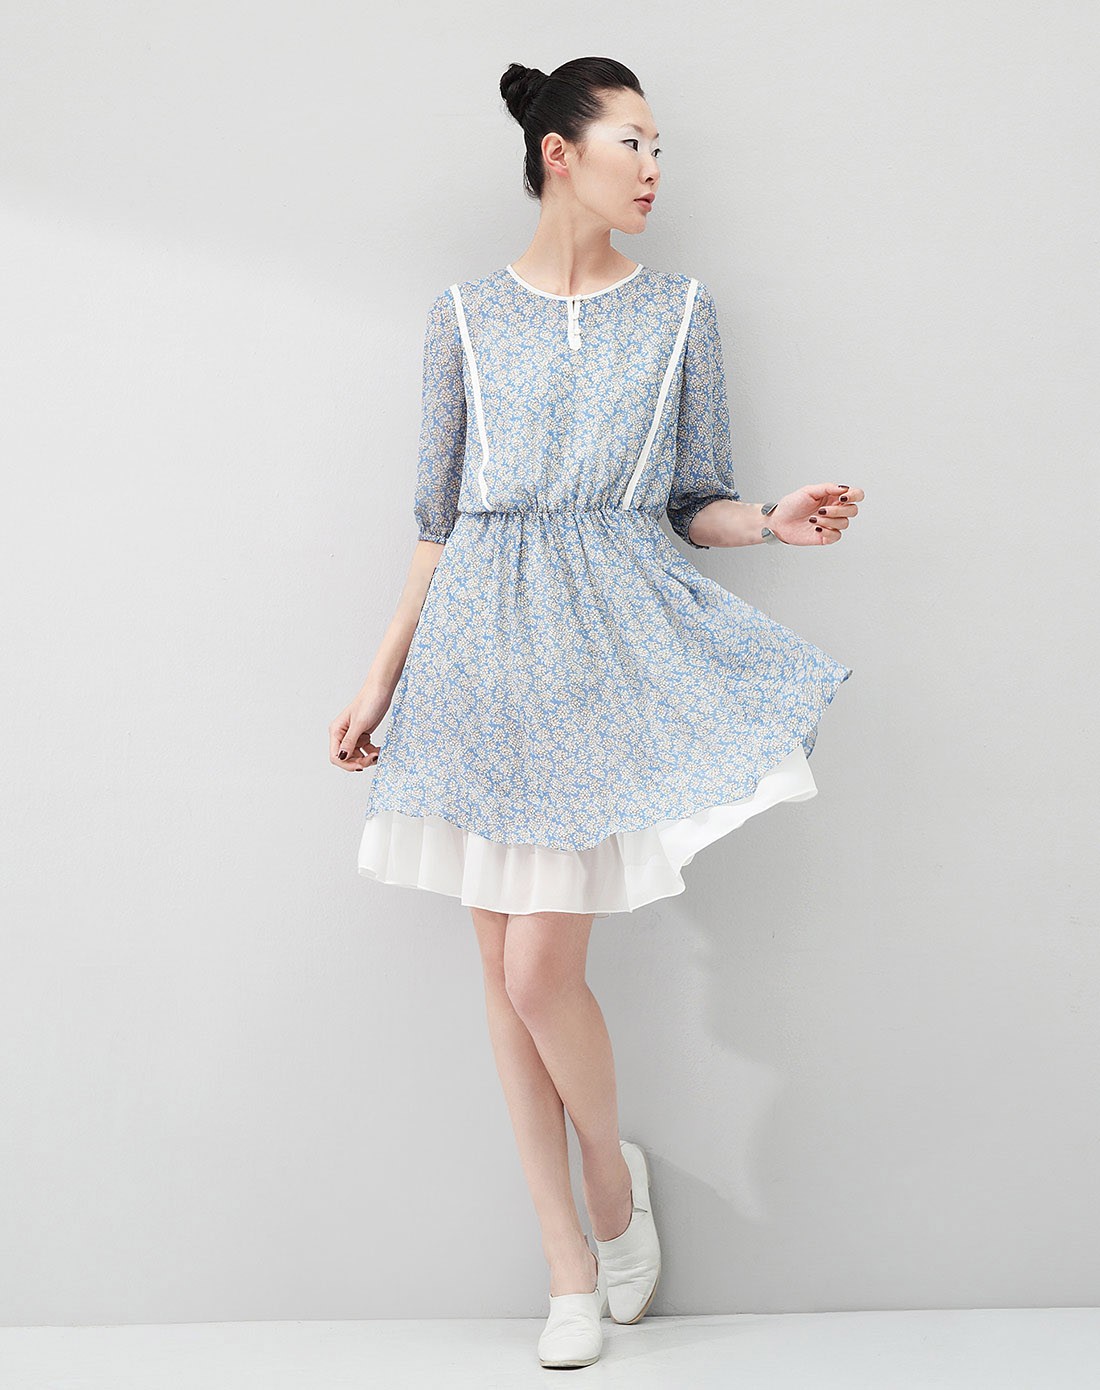 蓝底白花的裙子图片